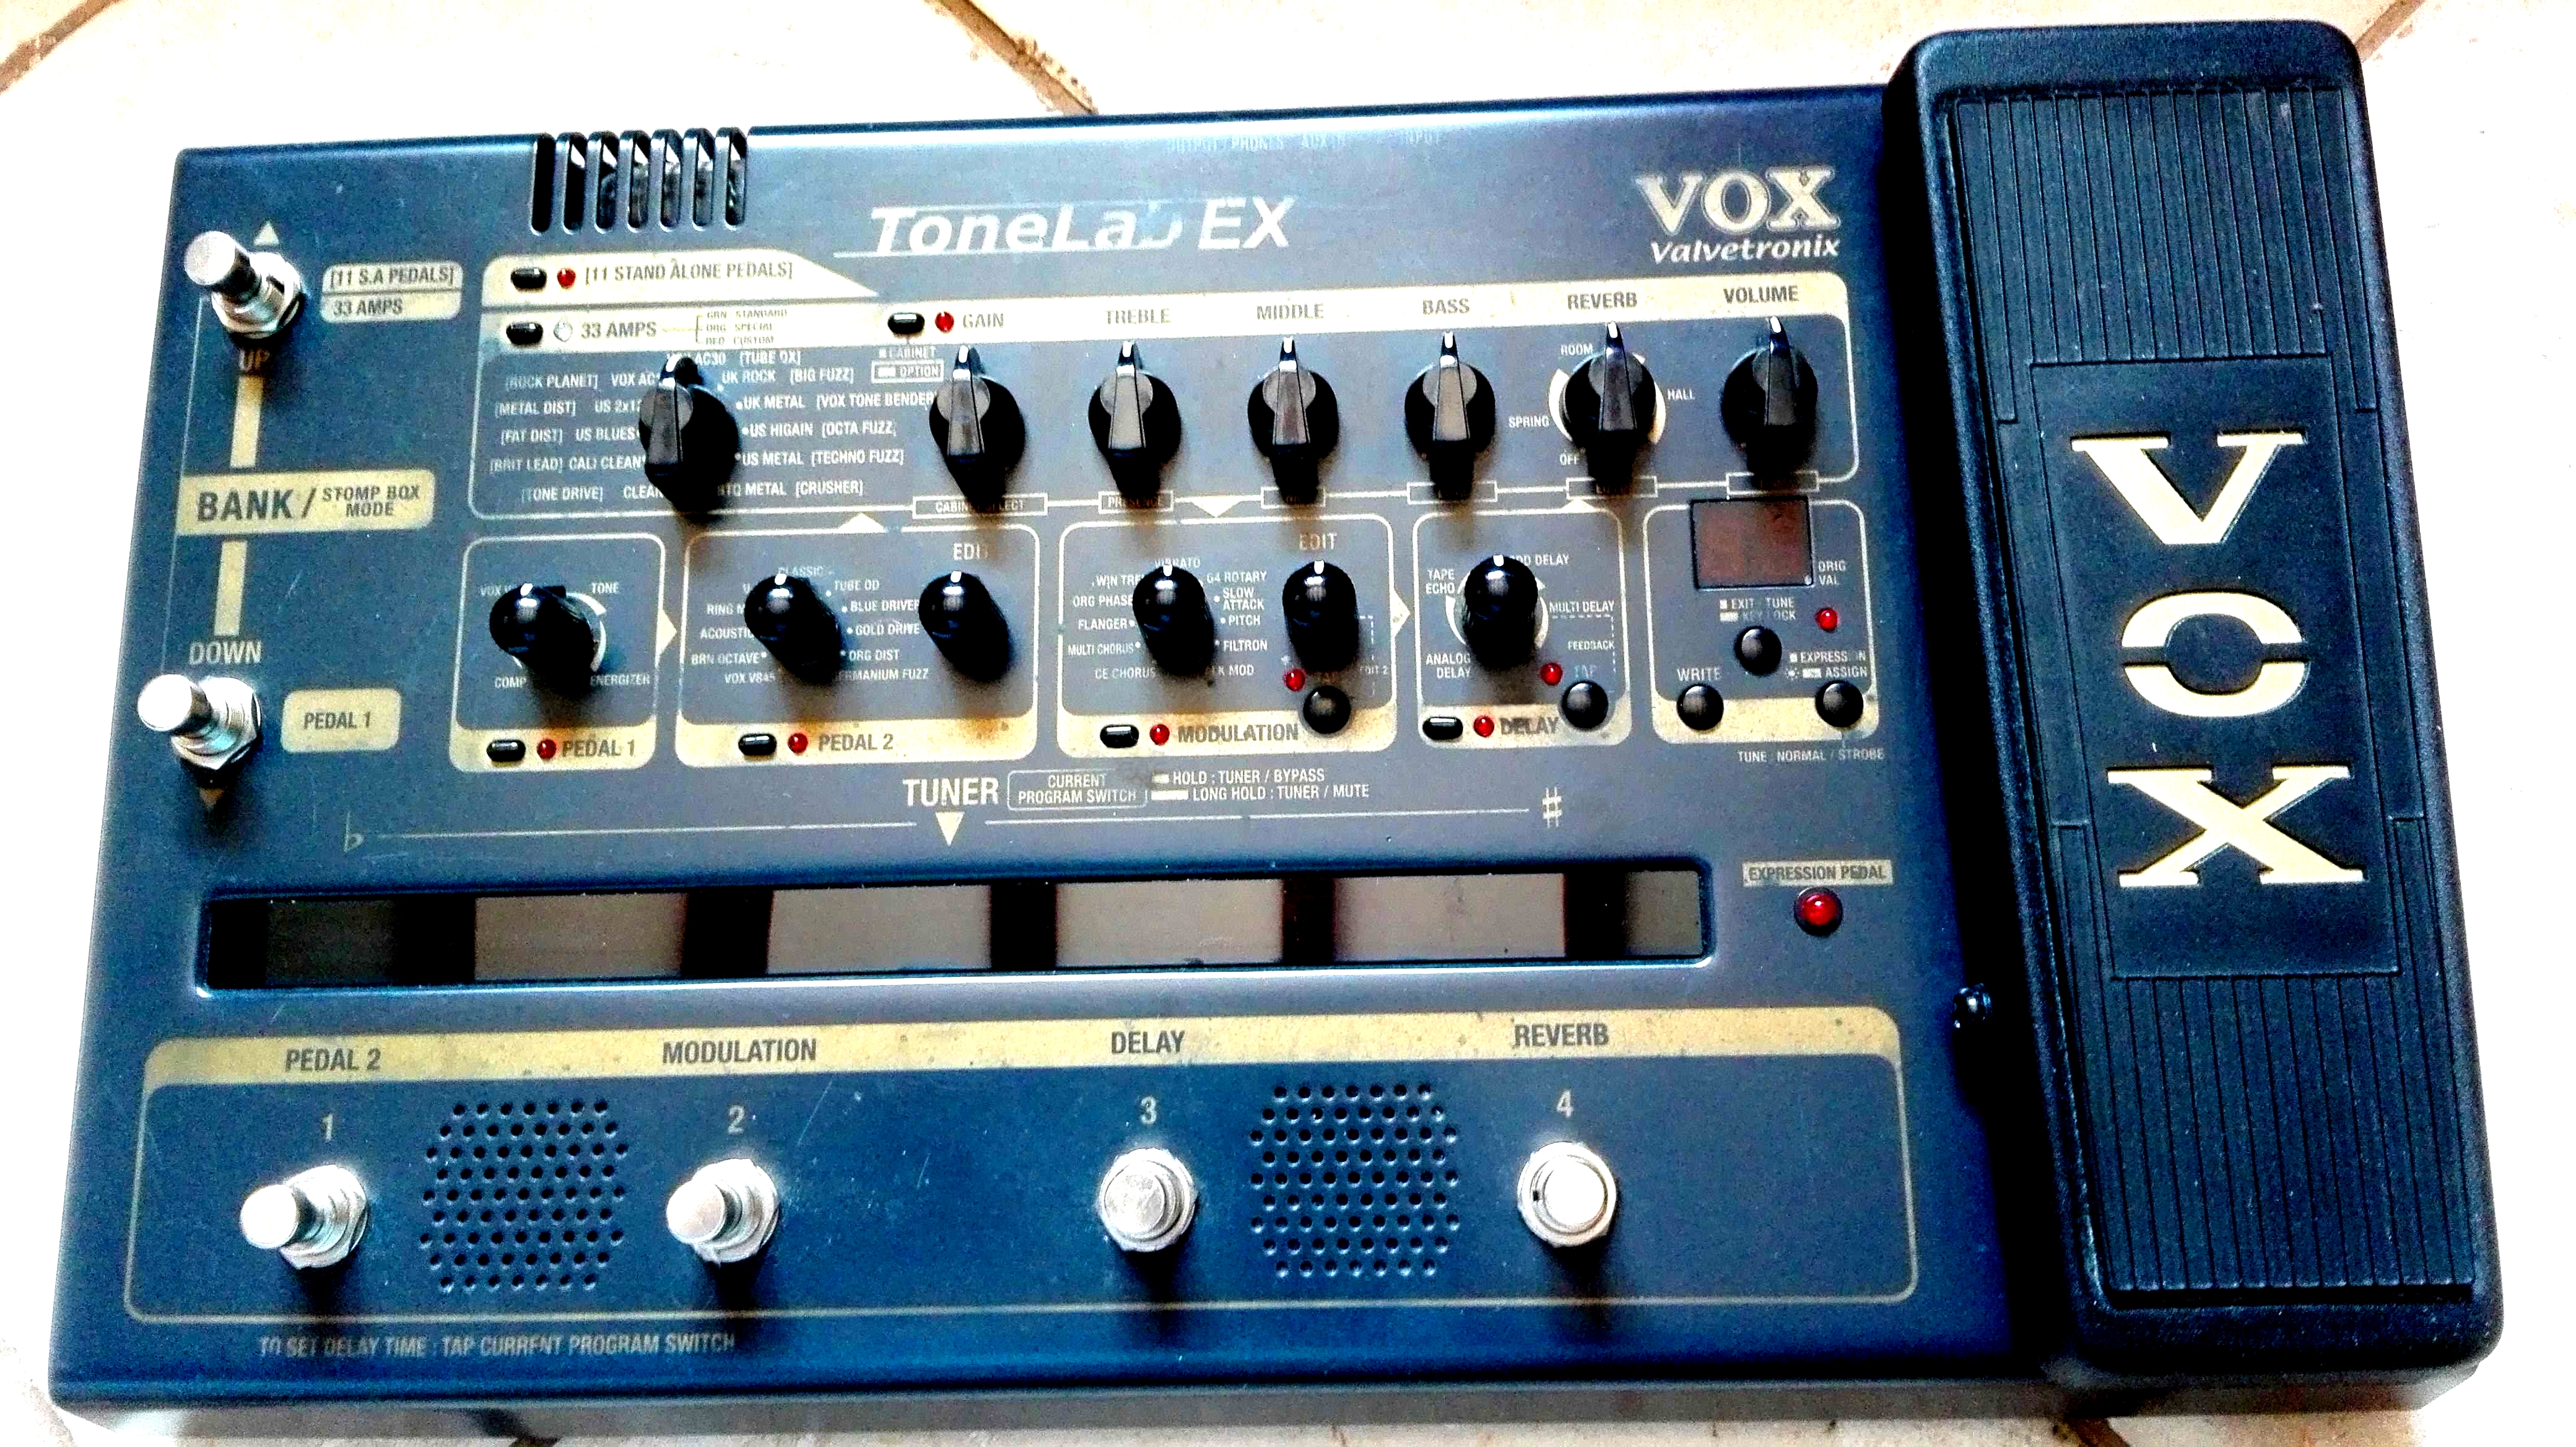 Tonelab EX - Vox Tonelab EX - Audiofanzine